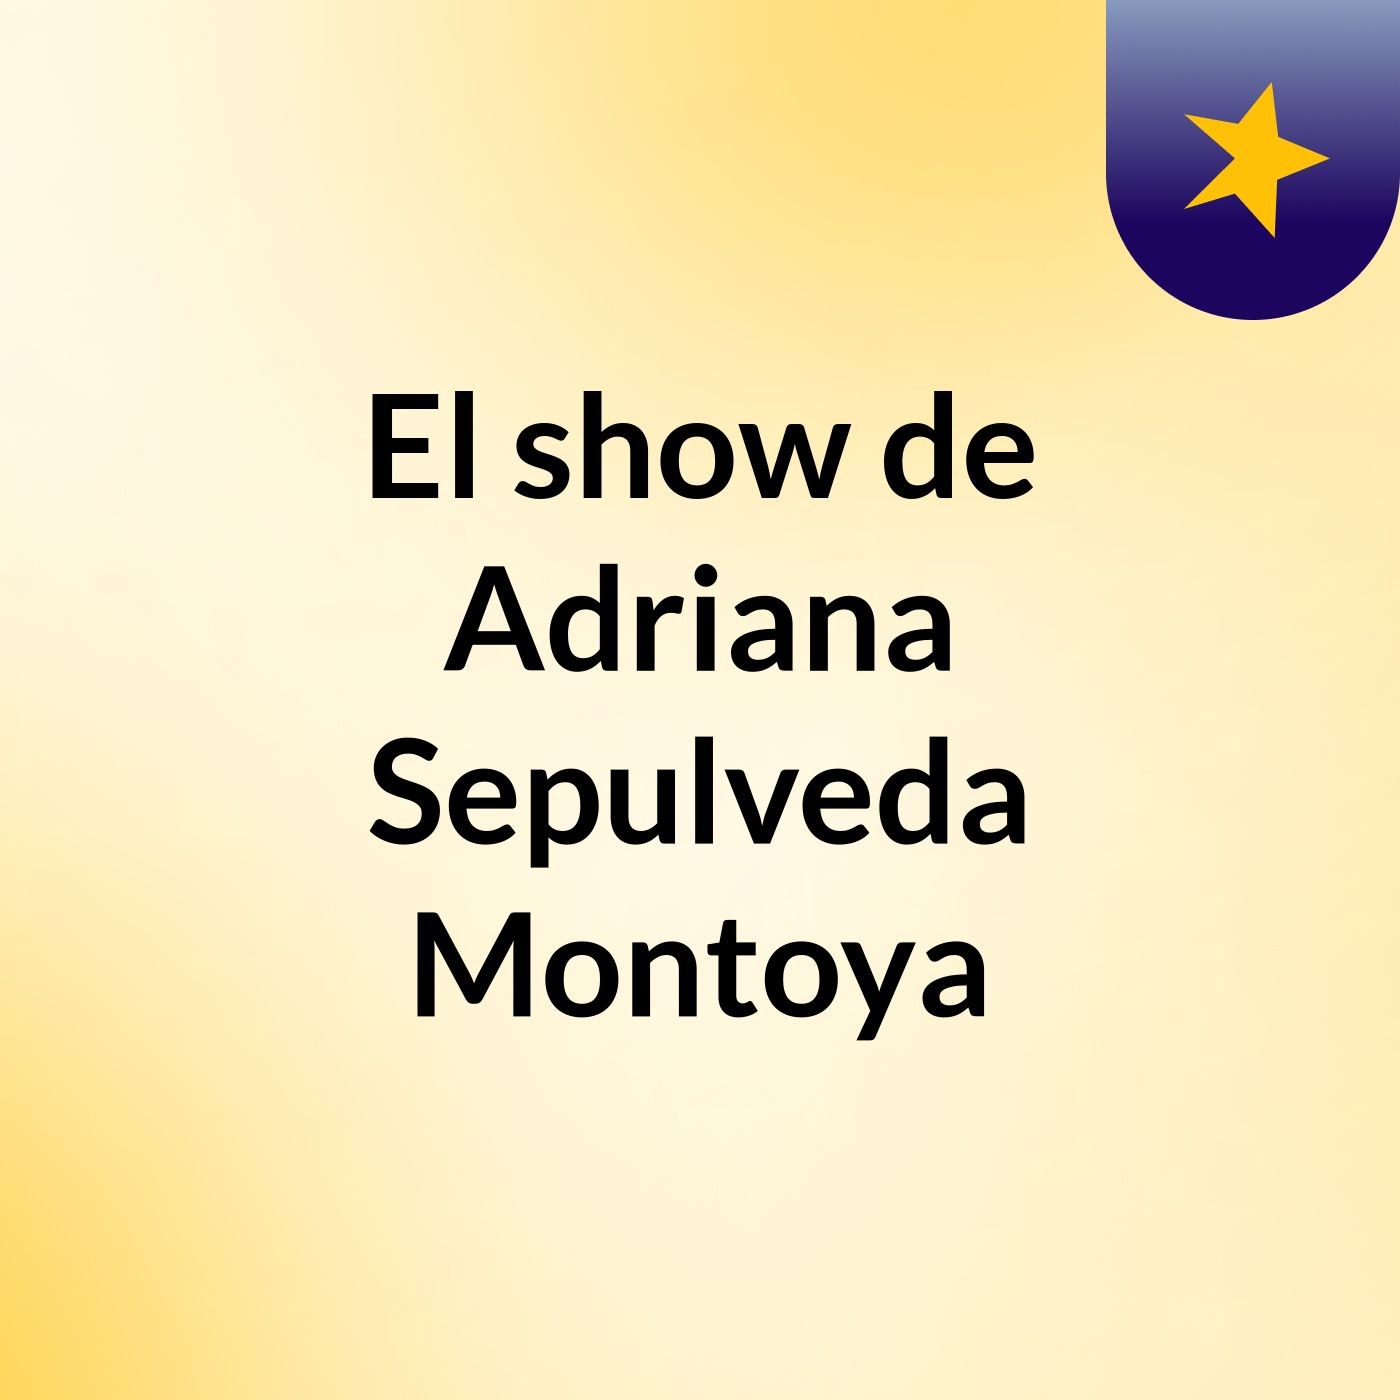 El show de Adriana Sepulveda Montoya